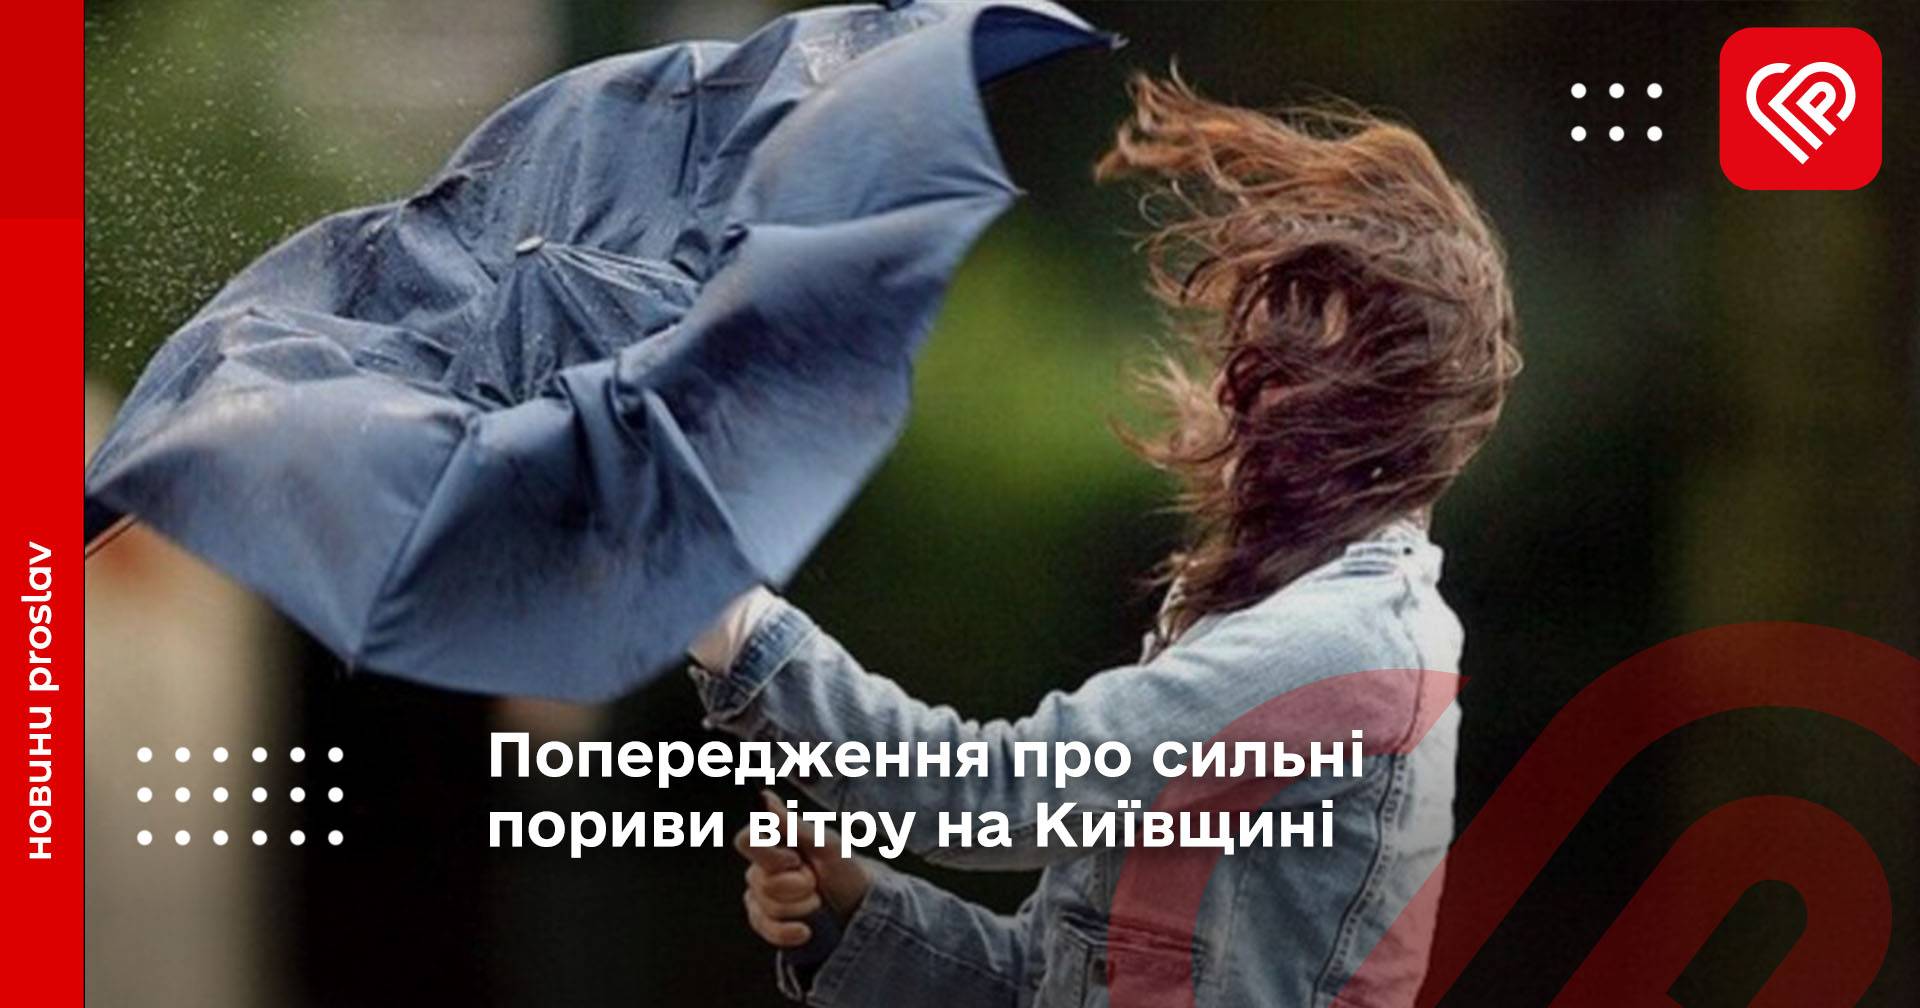 Попередження про сильні пориви вітру на Київщині